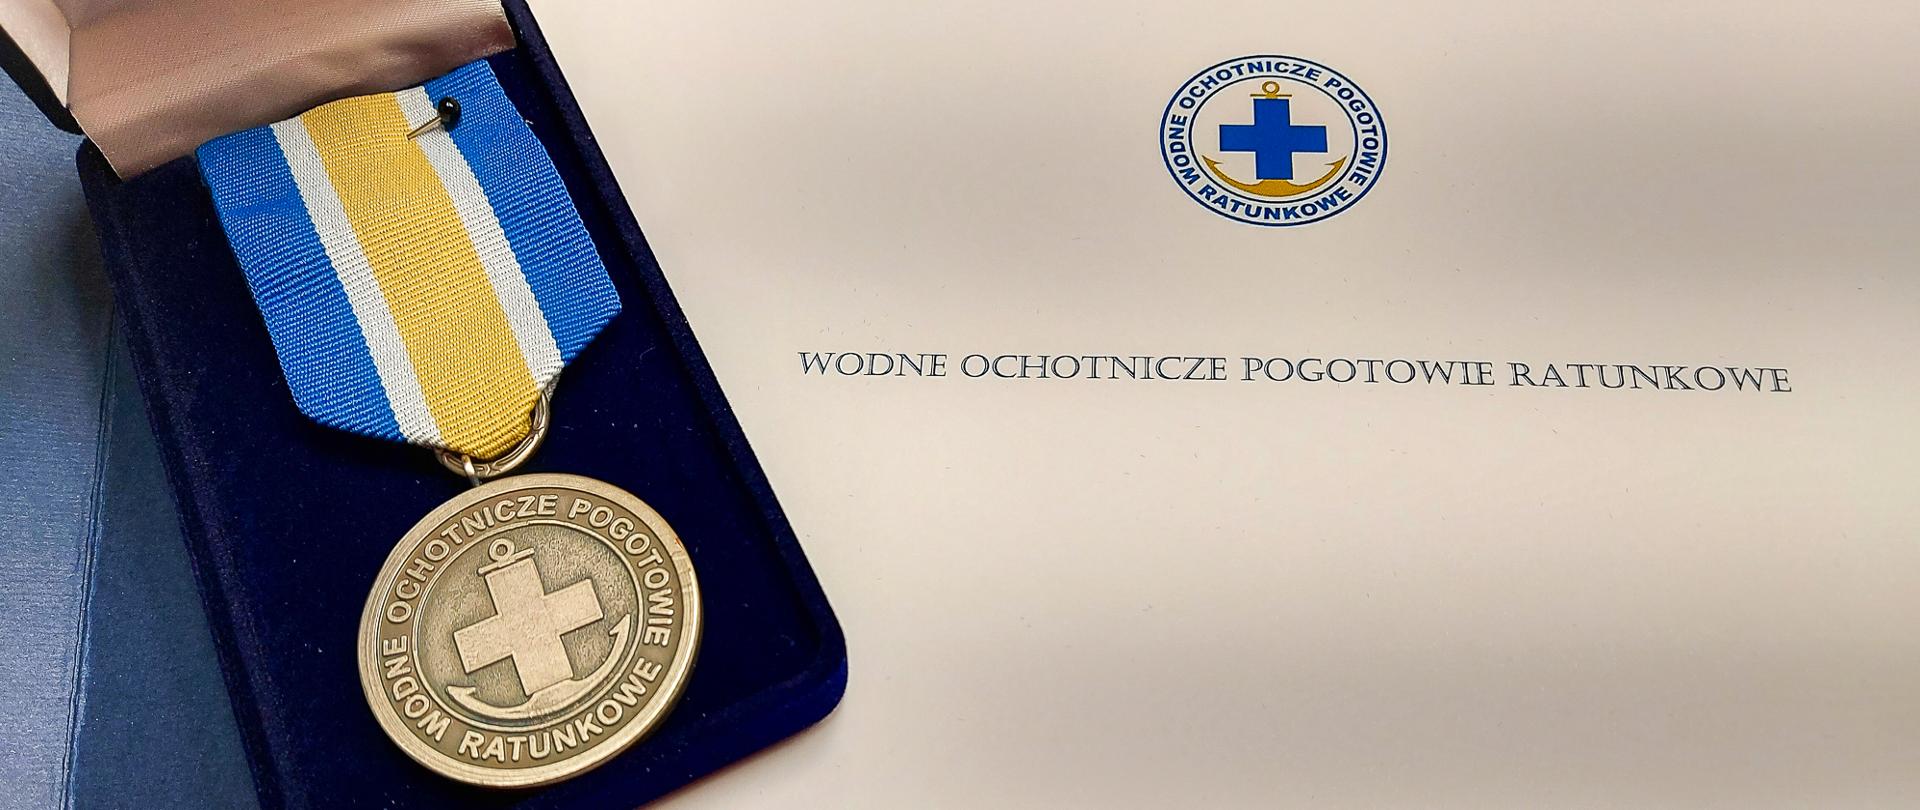 Zdjęcie przedstawia srebrny medal za zasługi dla Wodnego Ochotniczego Pogotowia Ratunkowego. Medal umieszczony jest na teczce z napisem i Logotypem WOPR.